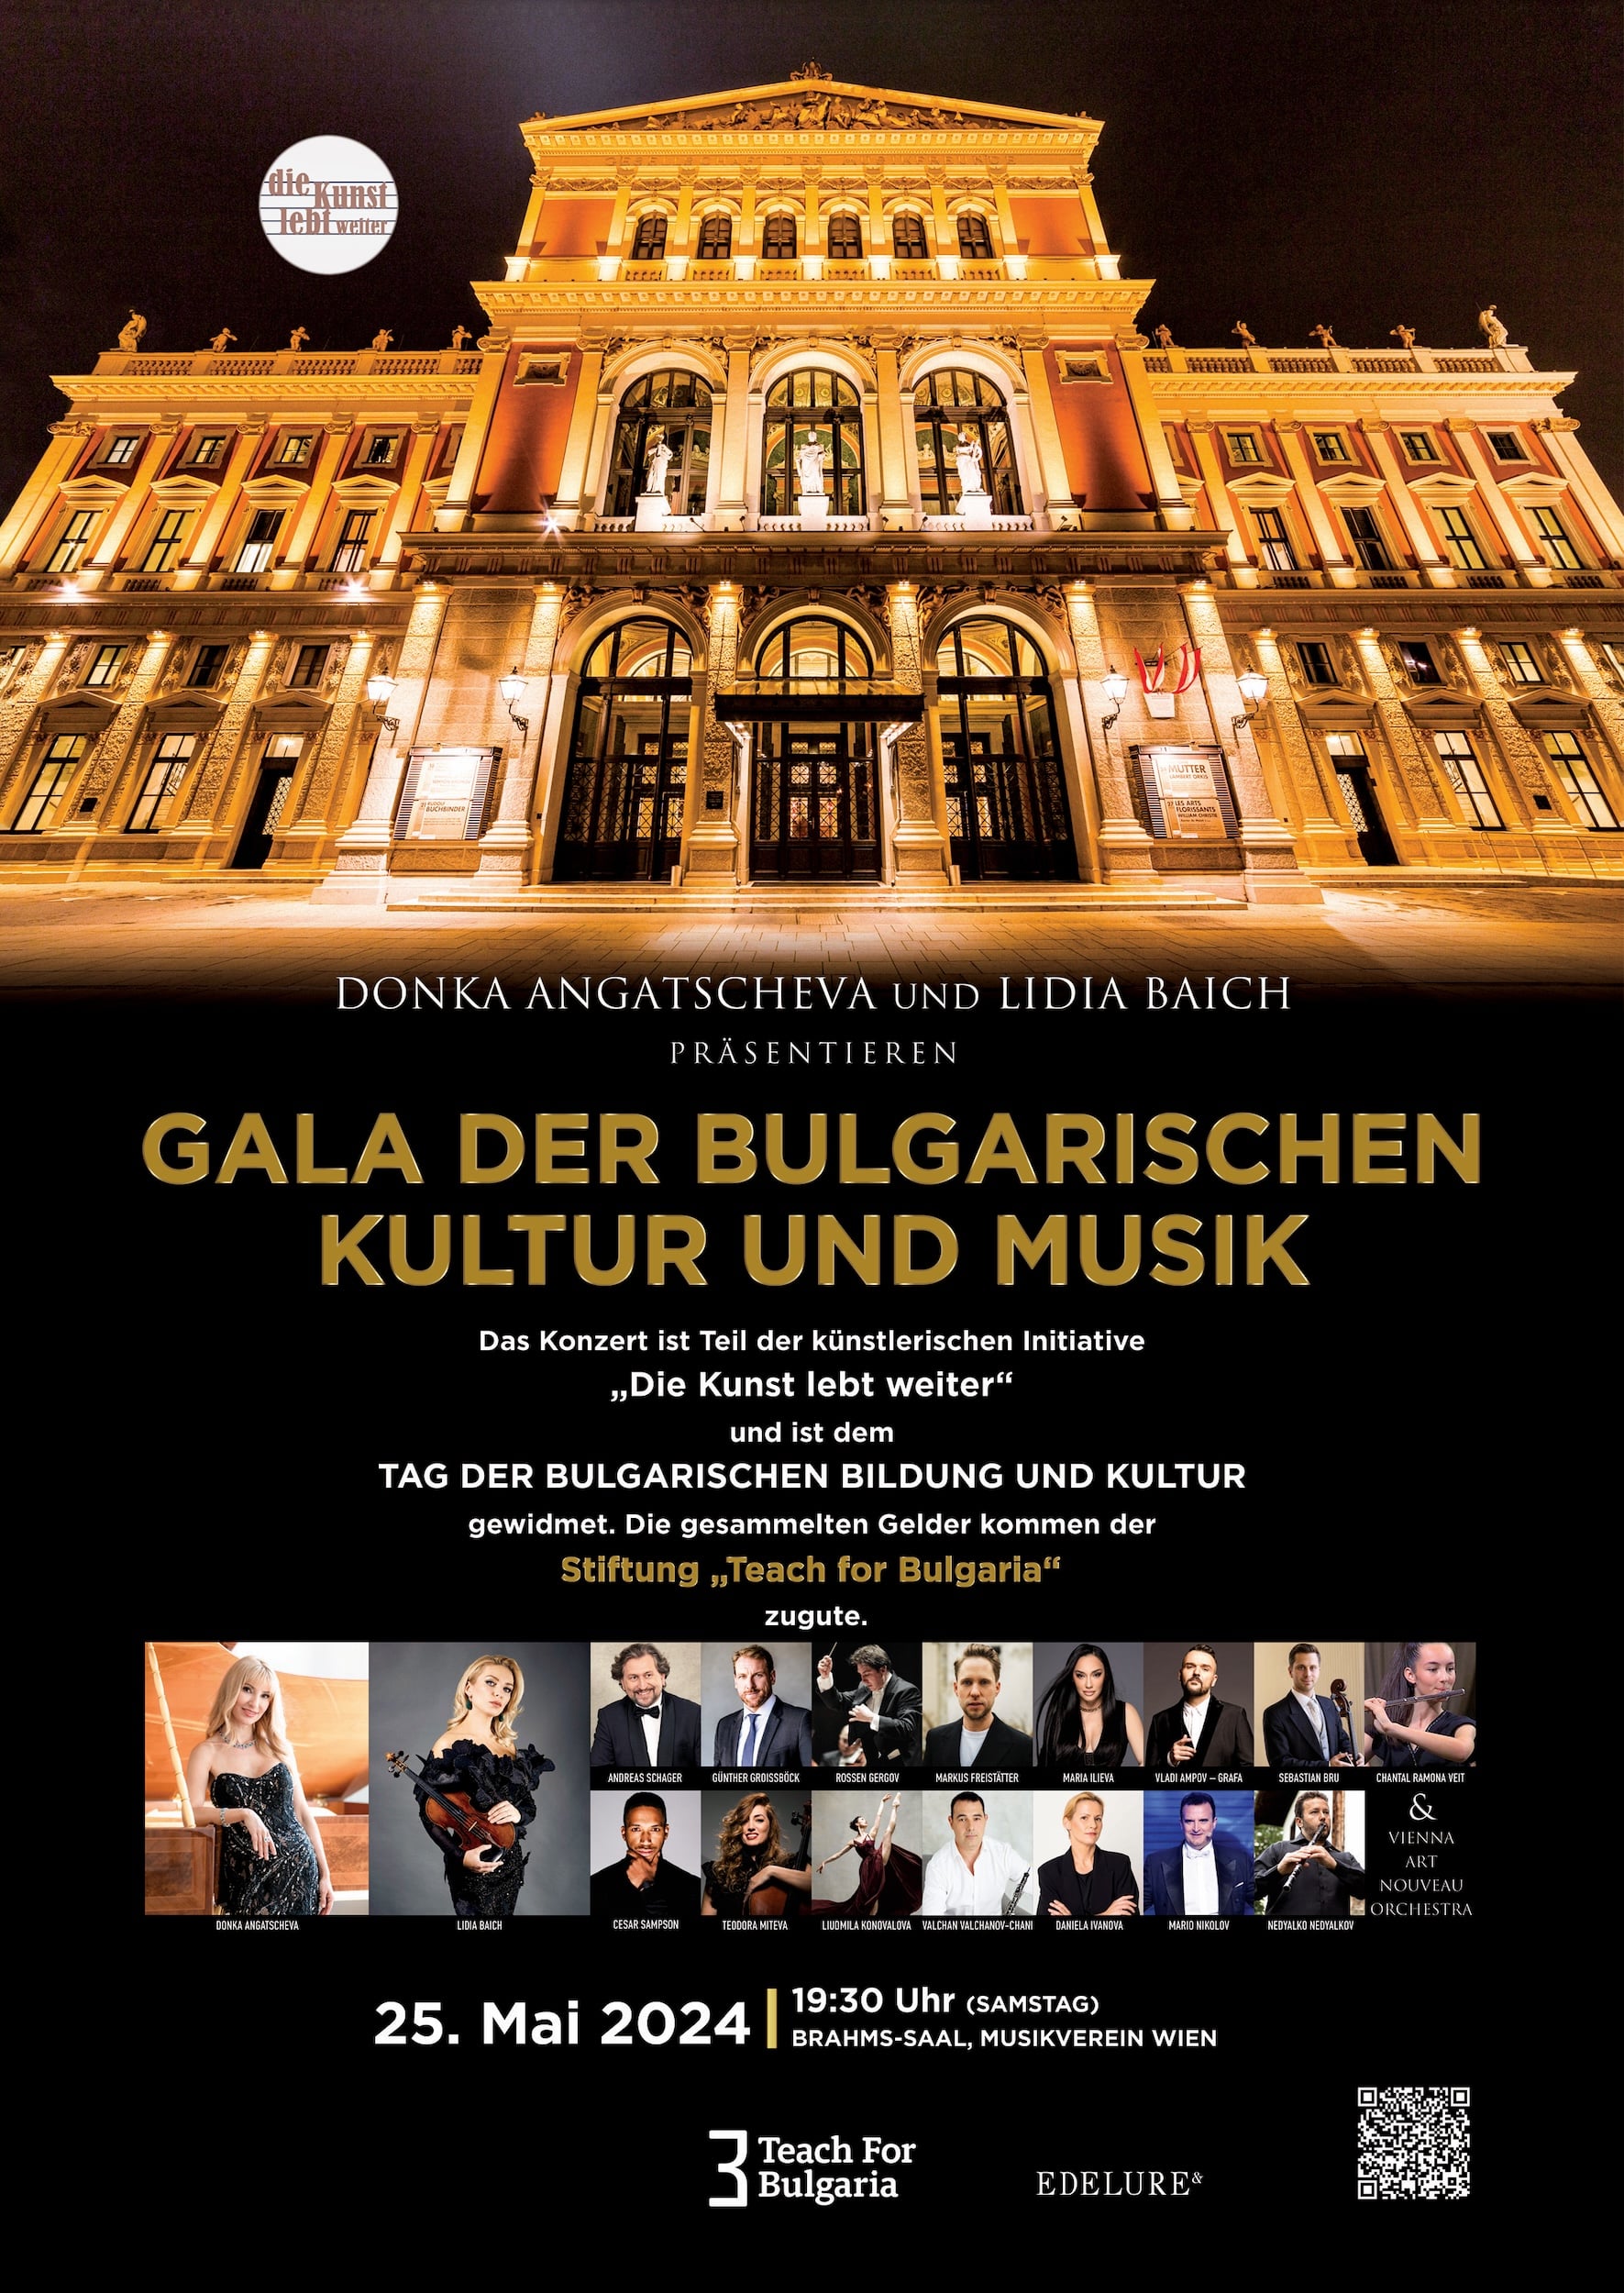 Gala der bulgarischen Kultur und Musik am 25. Mai 2024 im Musikverein Wien.